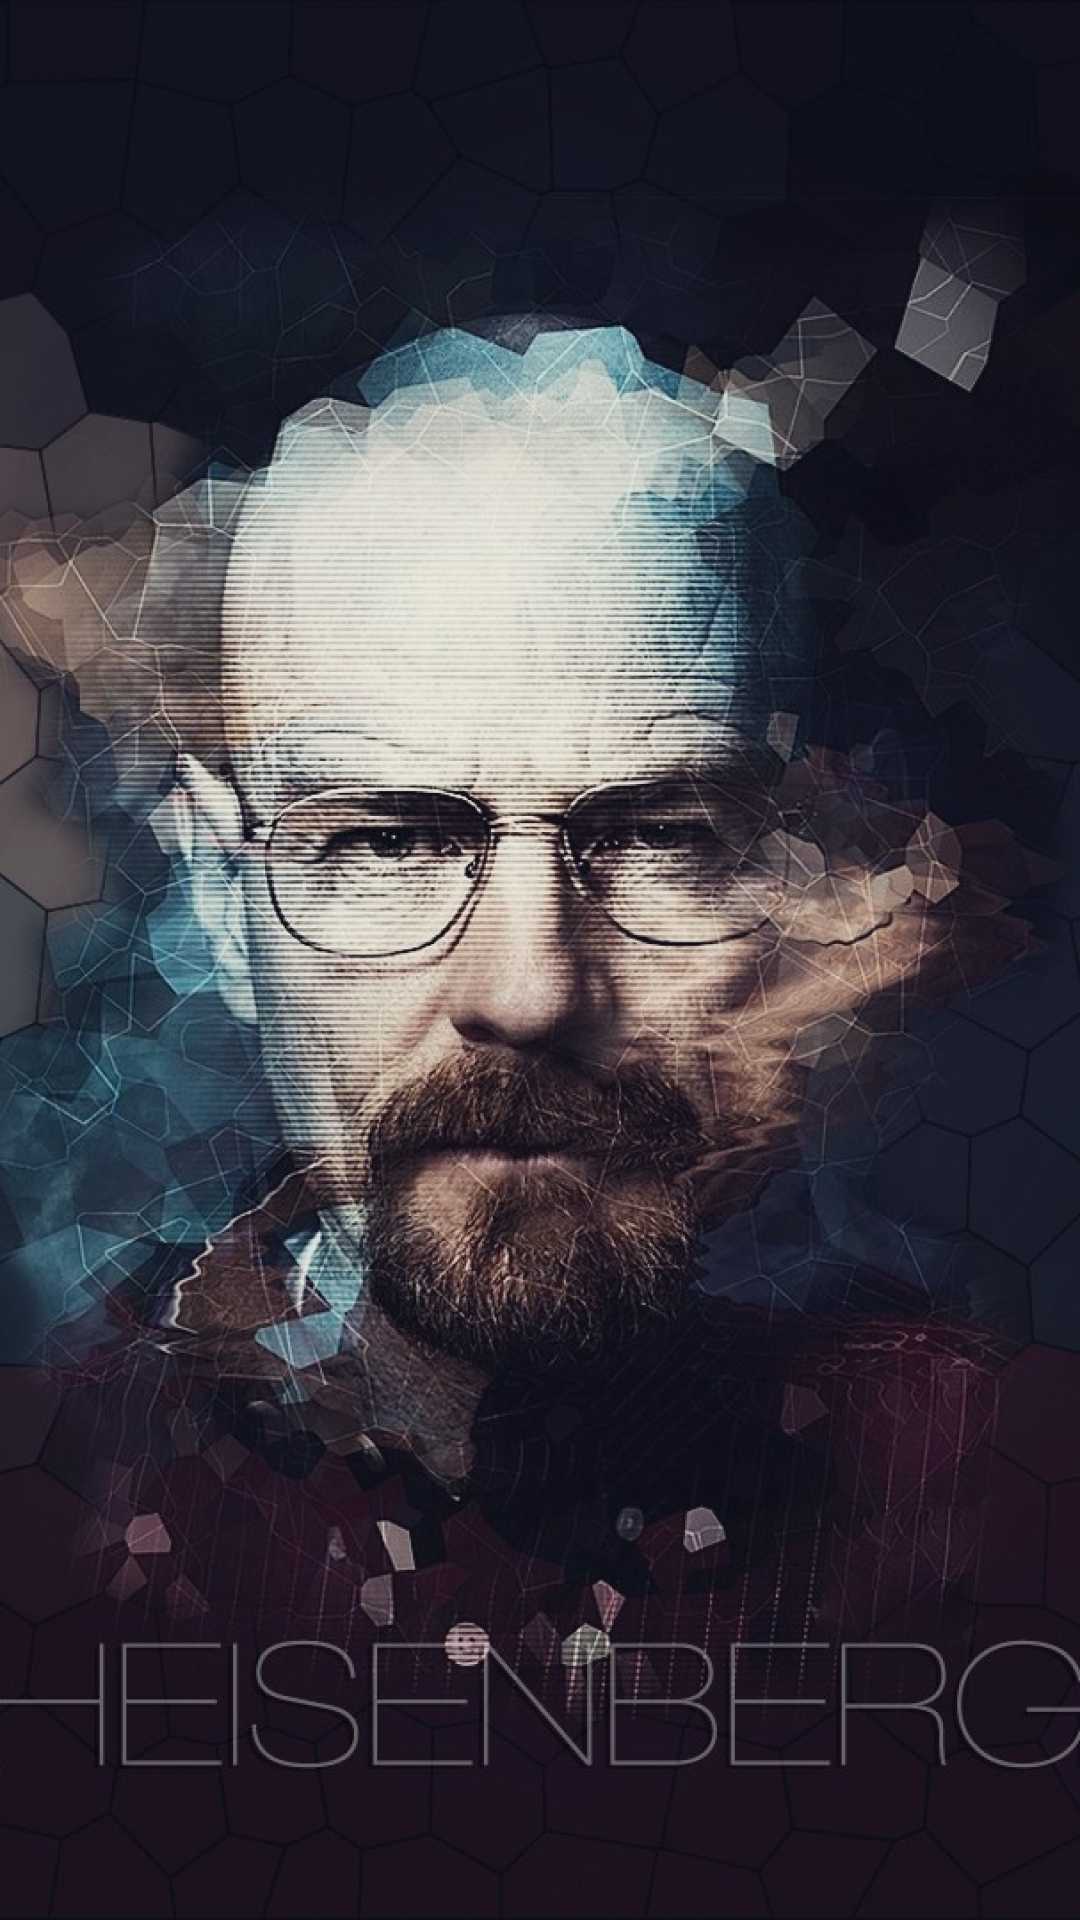 Heisenberg Breaking Bad Wallpaper - KoLPaPer - Awesome Free HD Wallpapers